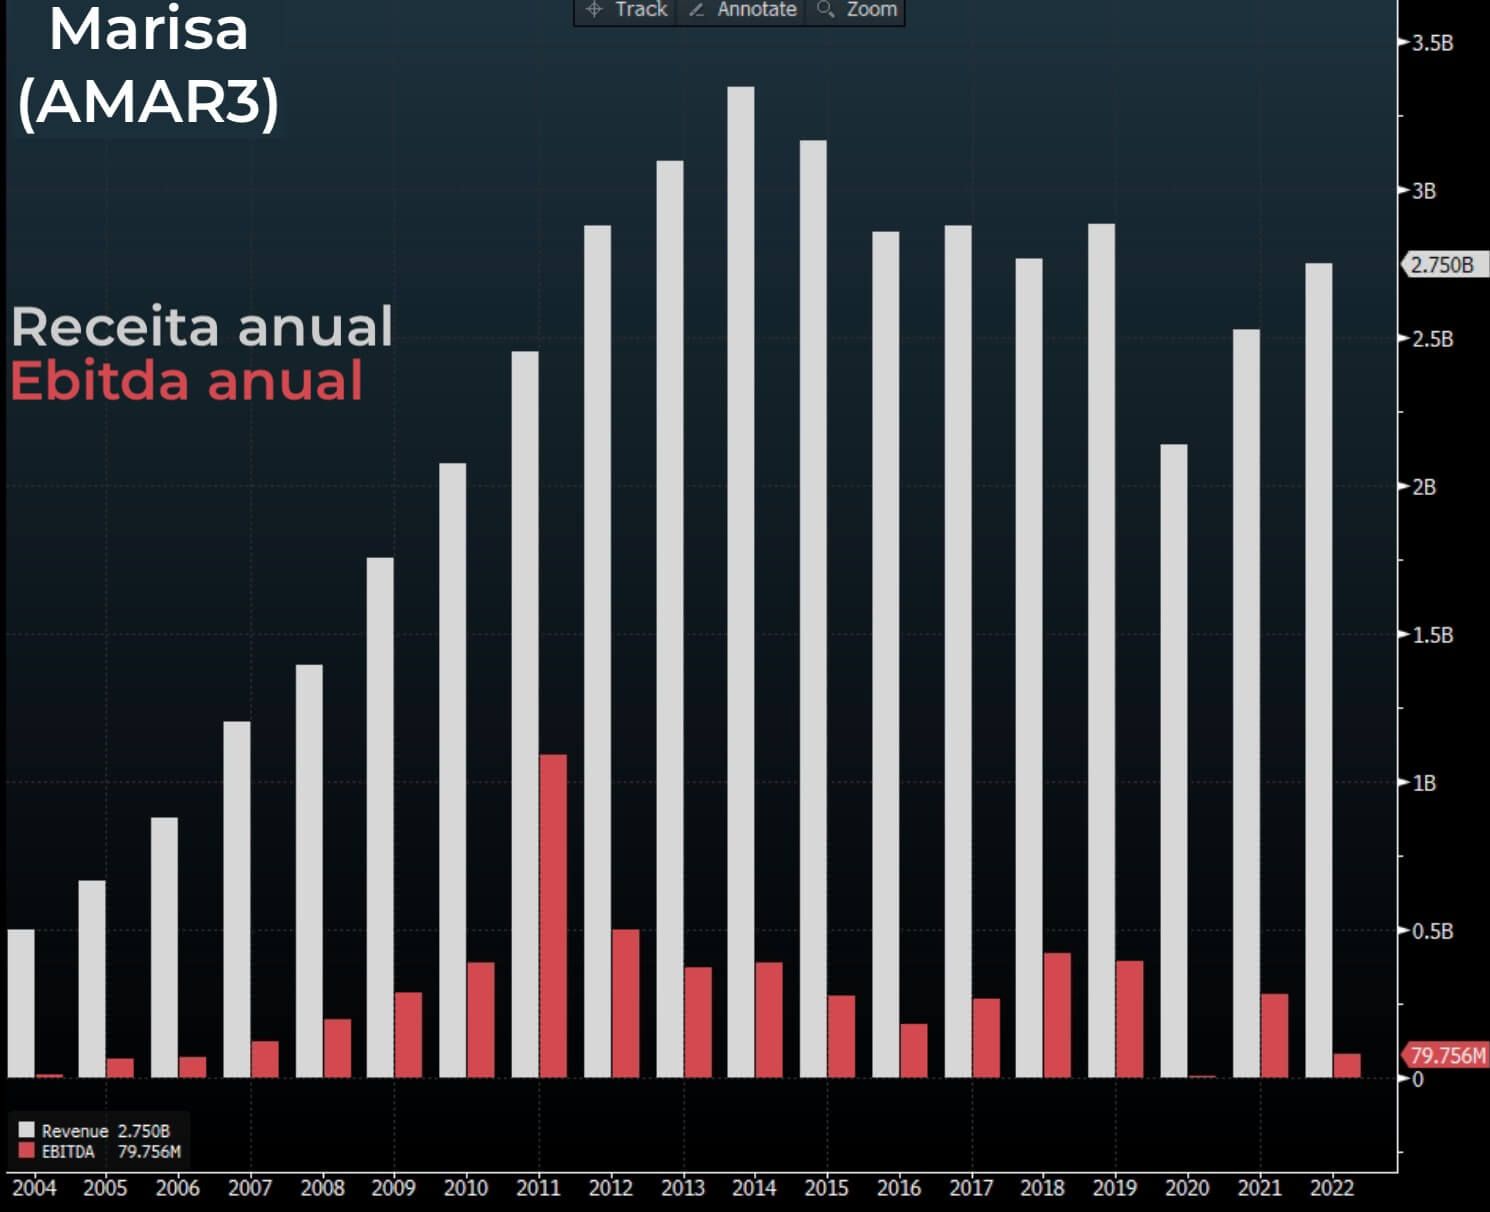 Gráfico receita anual e ebitda anual da Marisa desde 2004